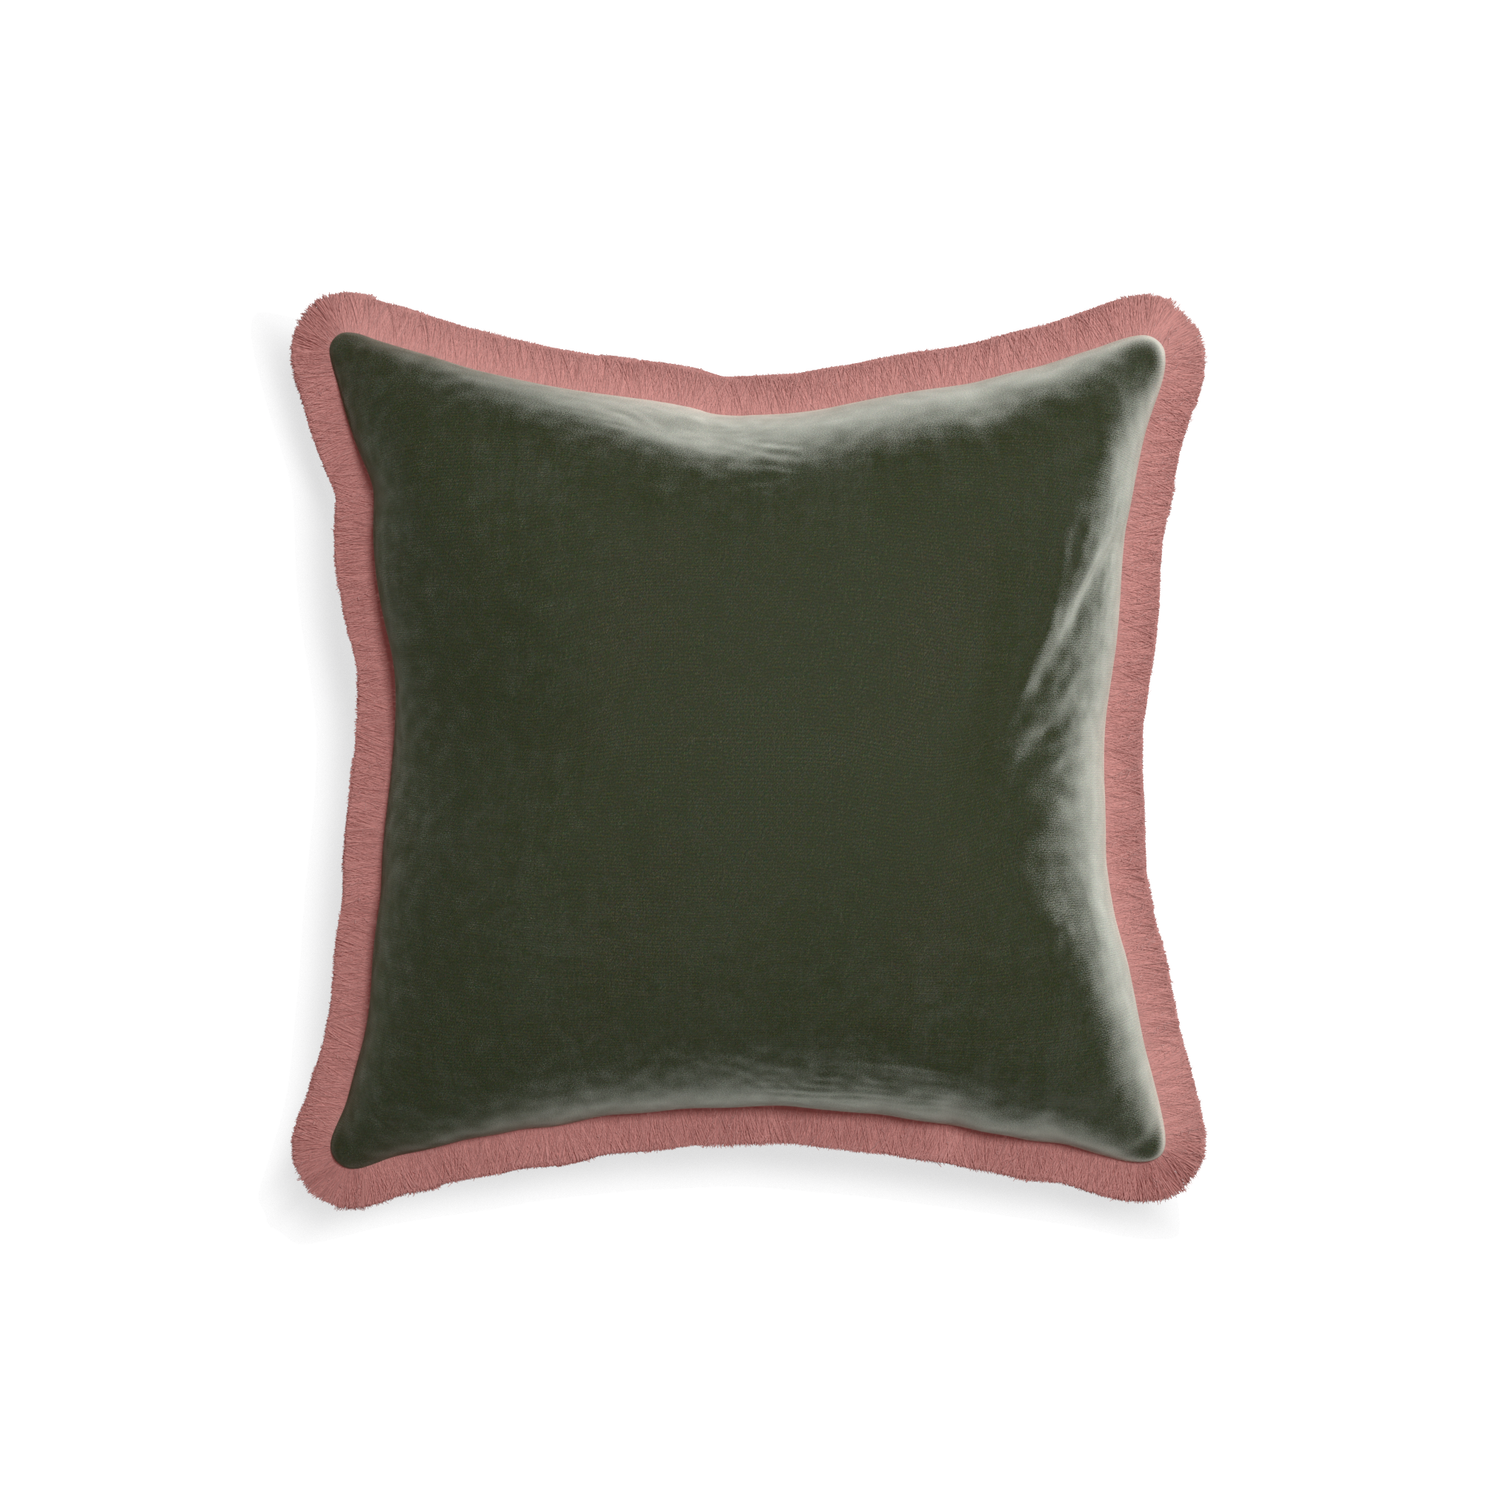 18-square fern velvet custom pillow with d fringe on white background